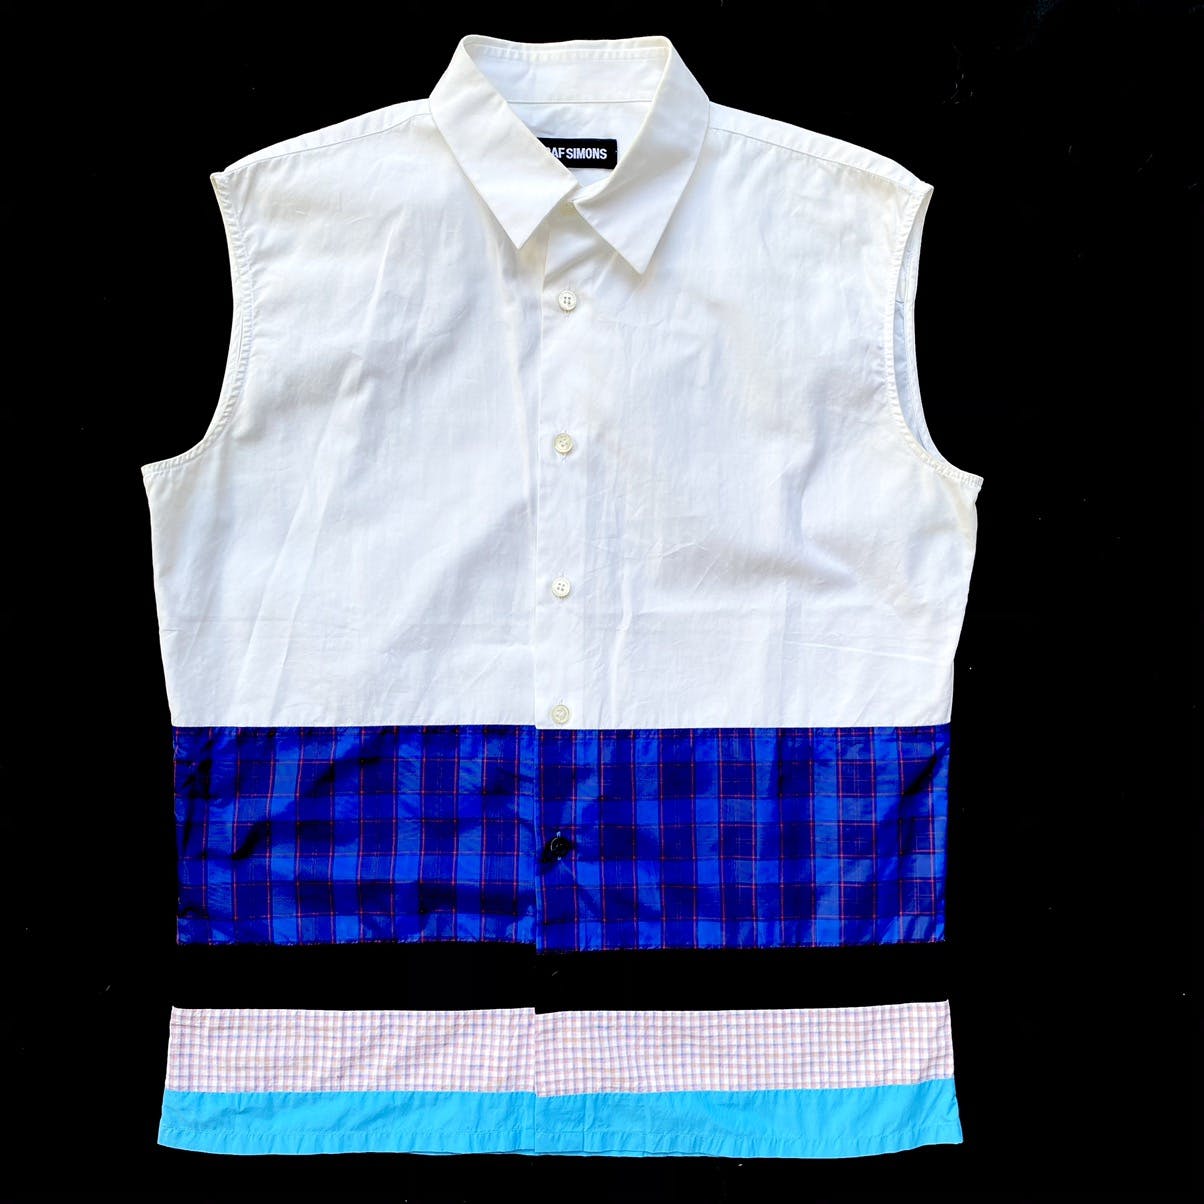 SS12 Sleeveless Shirt - 1